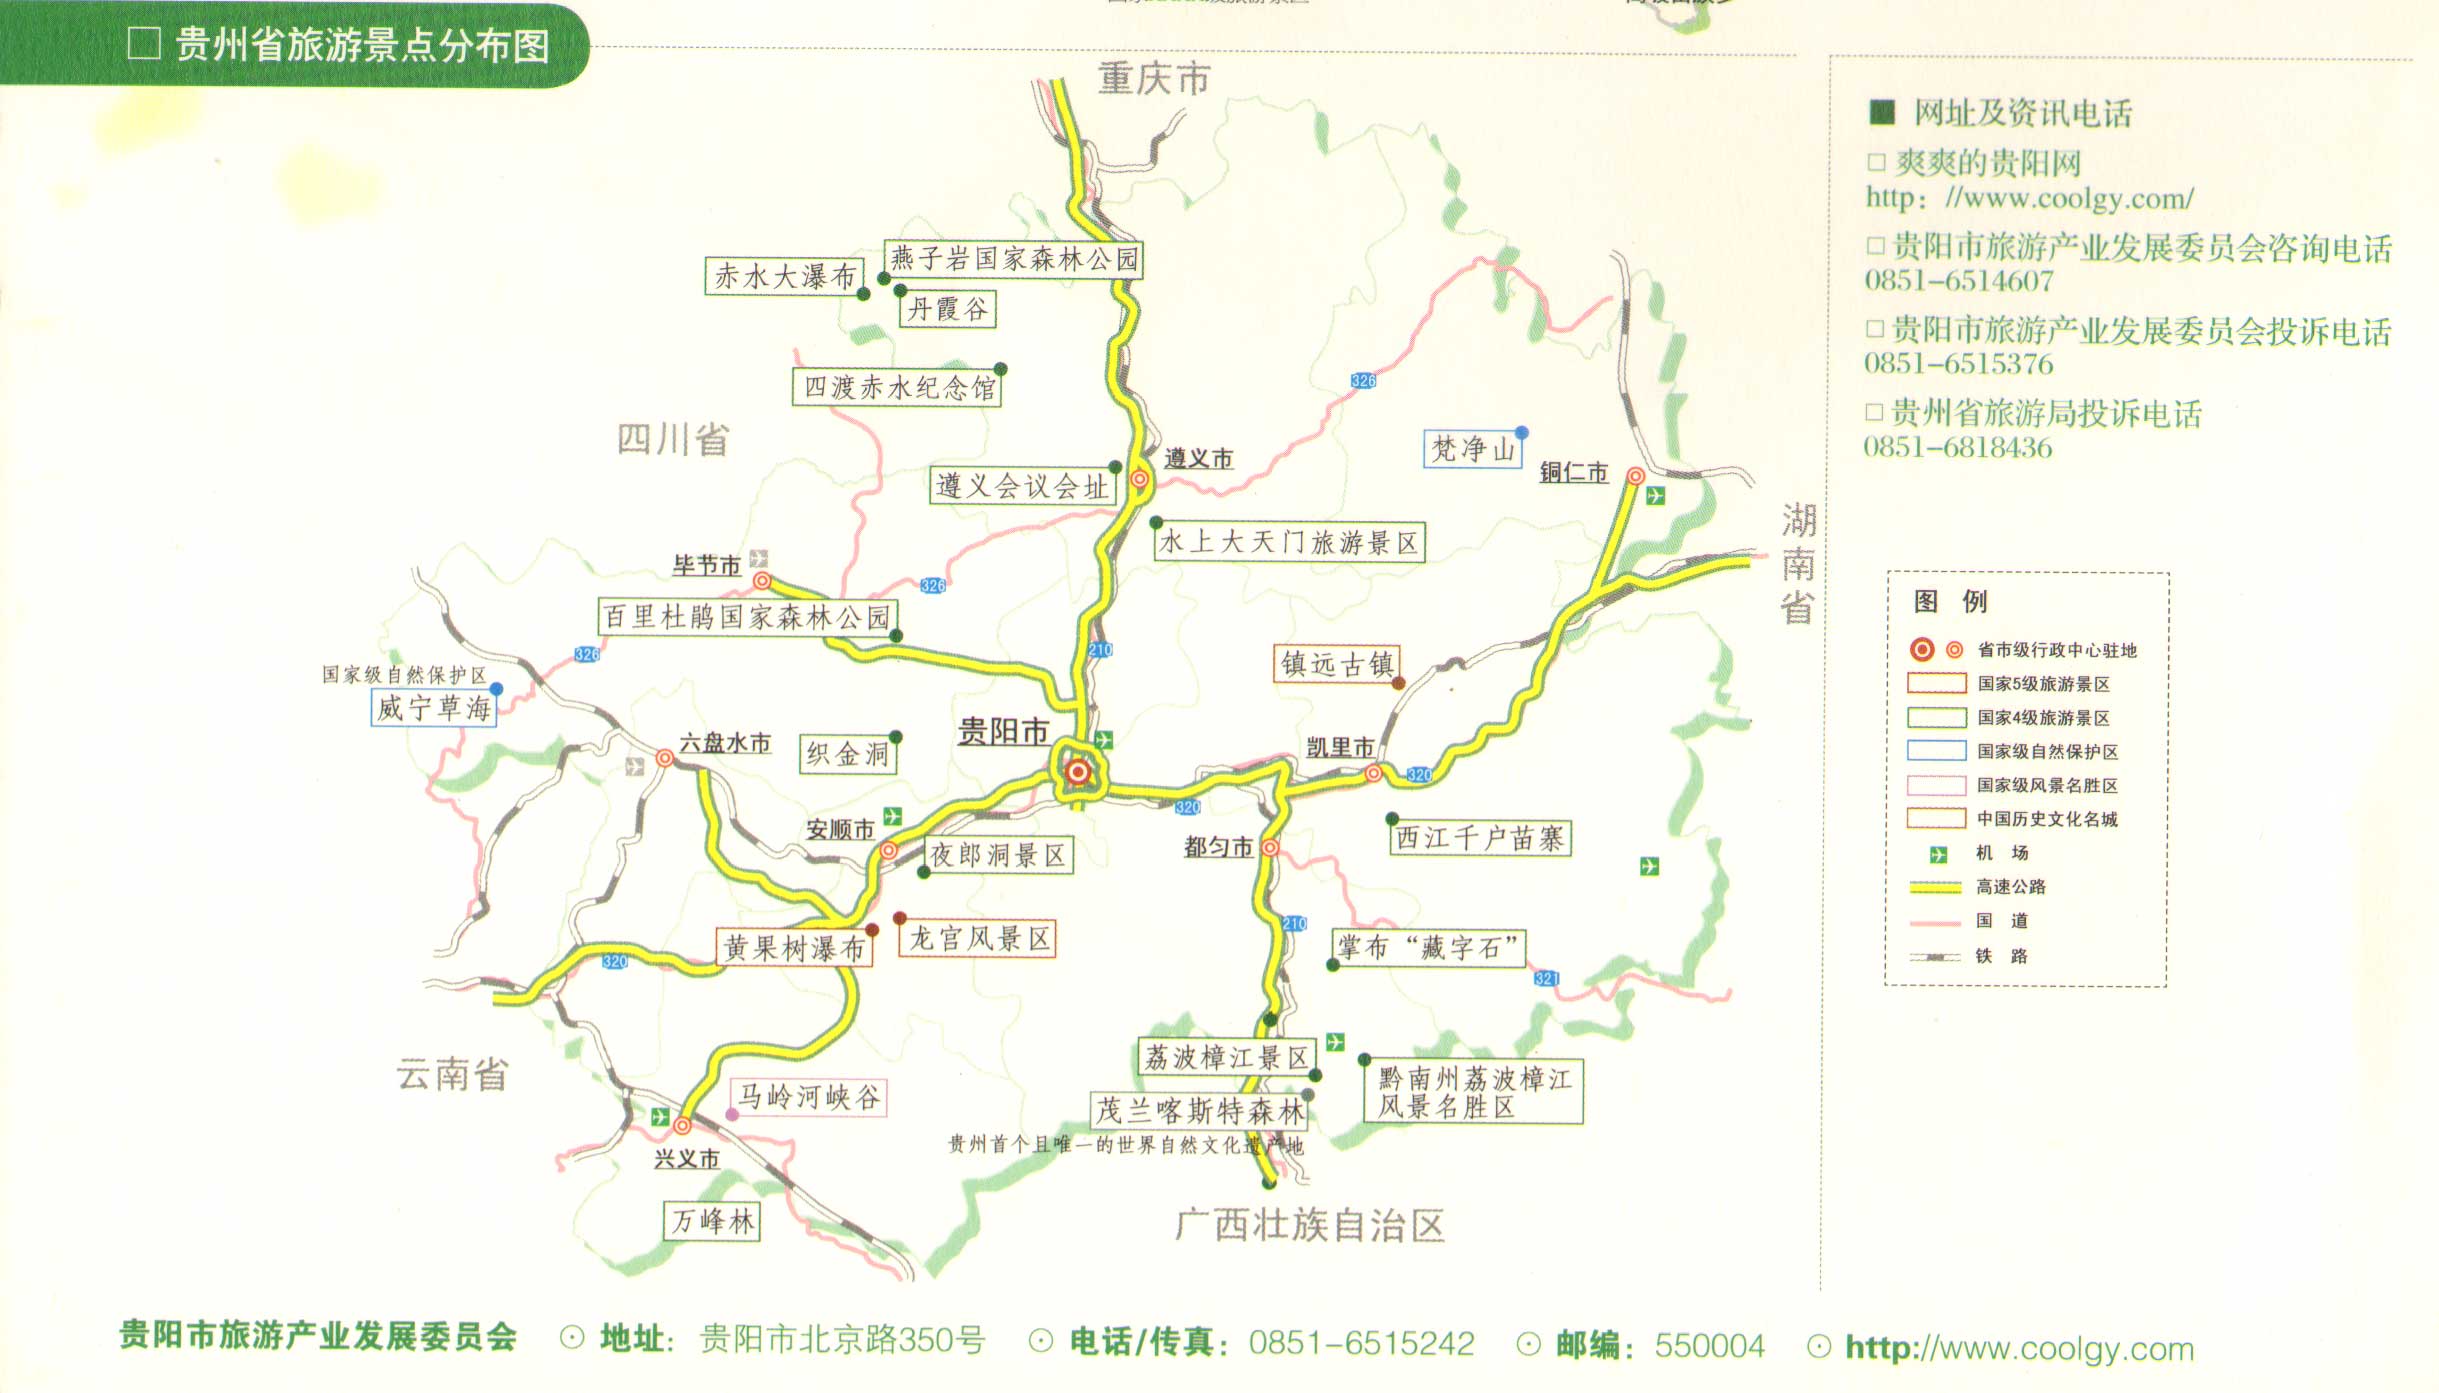 贵州省旅游景点分布图_贵州旅游地图库_地图窝